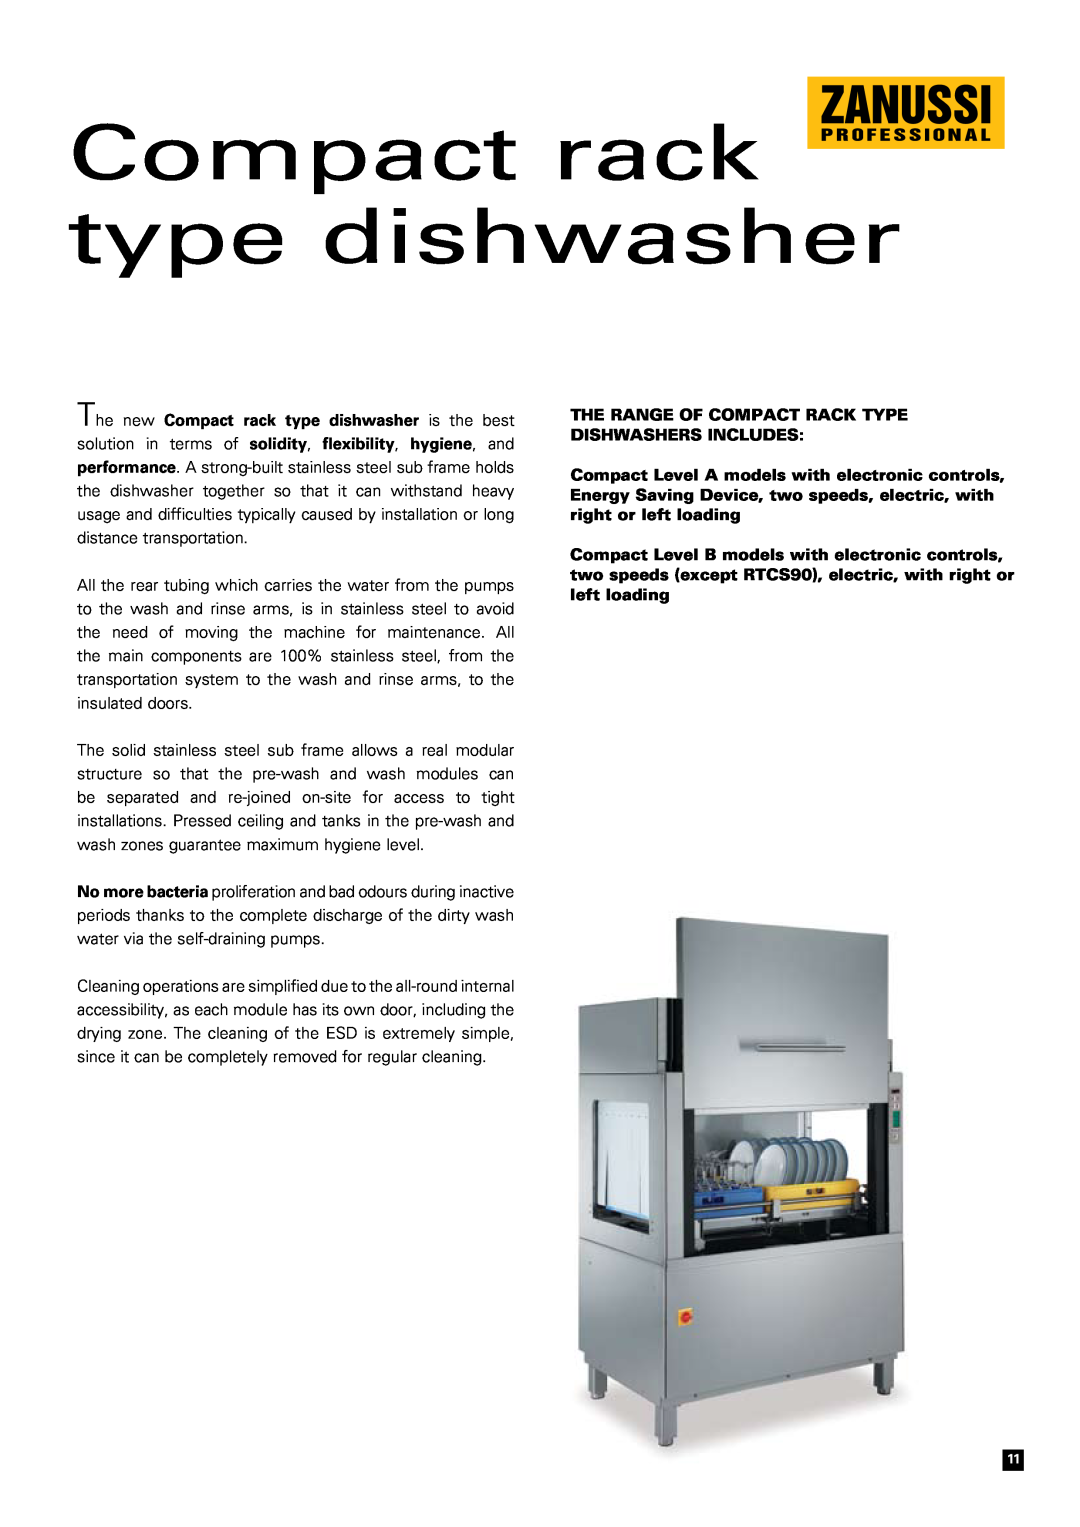 Zanussi N 900, Snack 600, N 700, RTM 140 Compact rack type dishwasher, THE RANGE OF compact RACK TYPE DISHWASHERS INCLUDES 